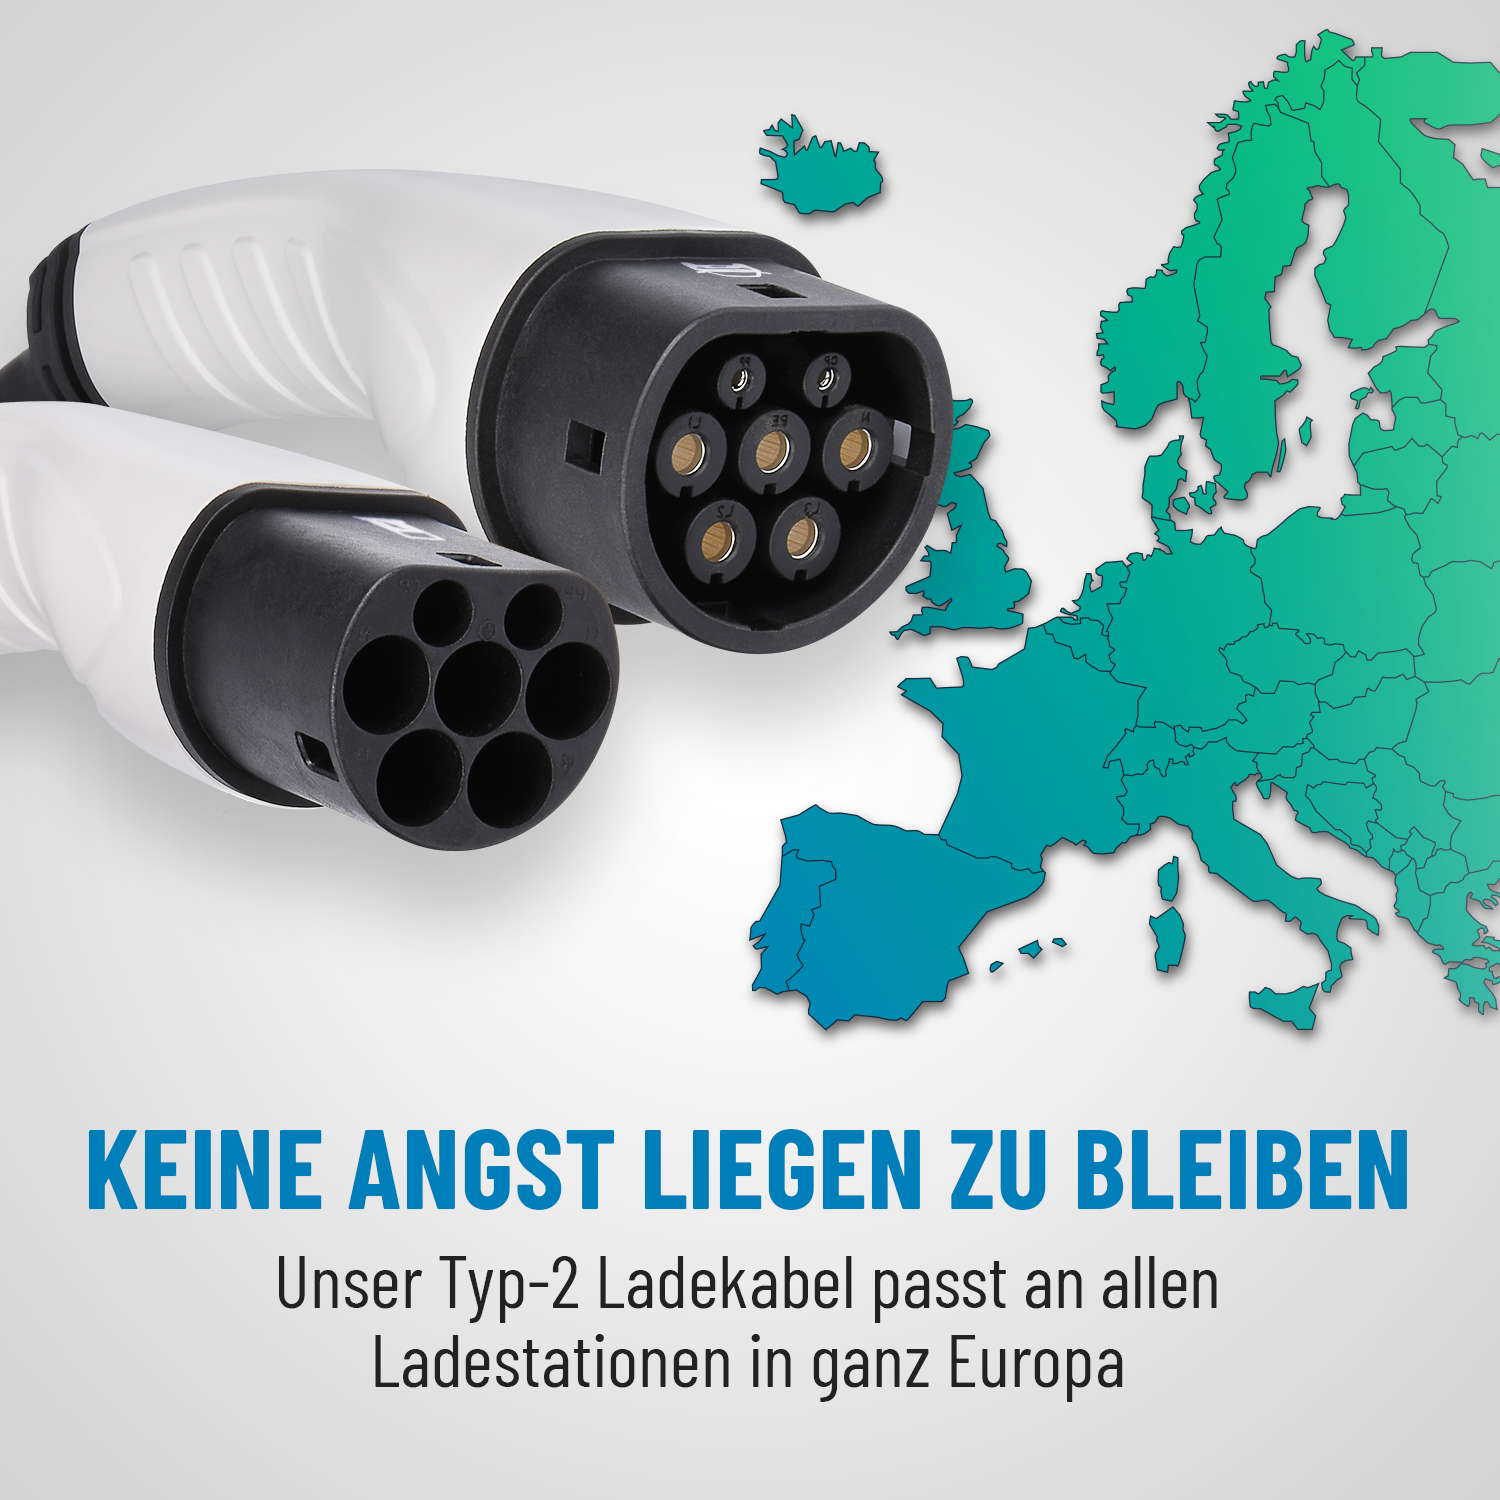 ABSINA 22kW Ladekabel passt an allen Ladestationen in Europa